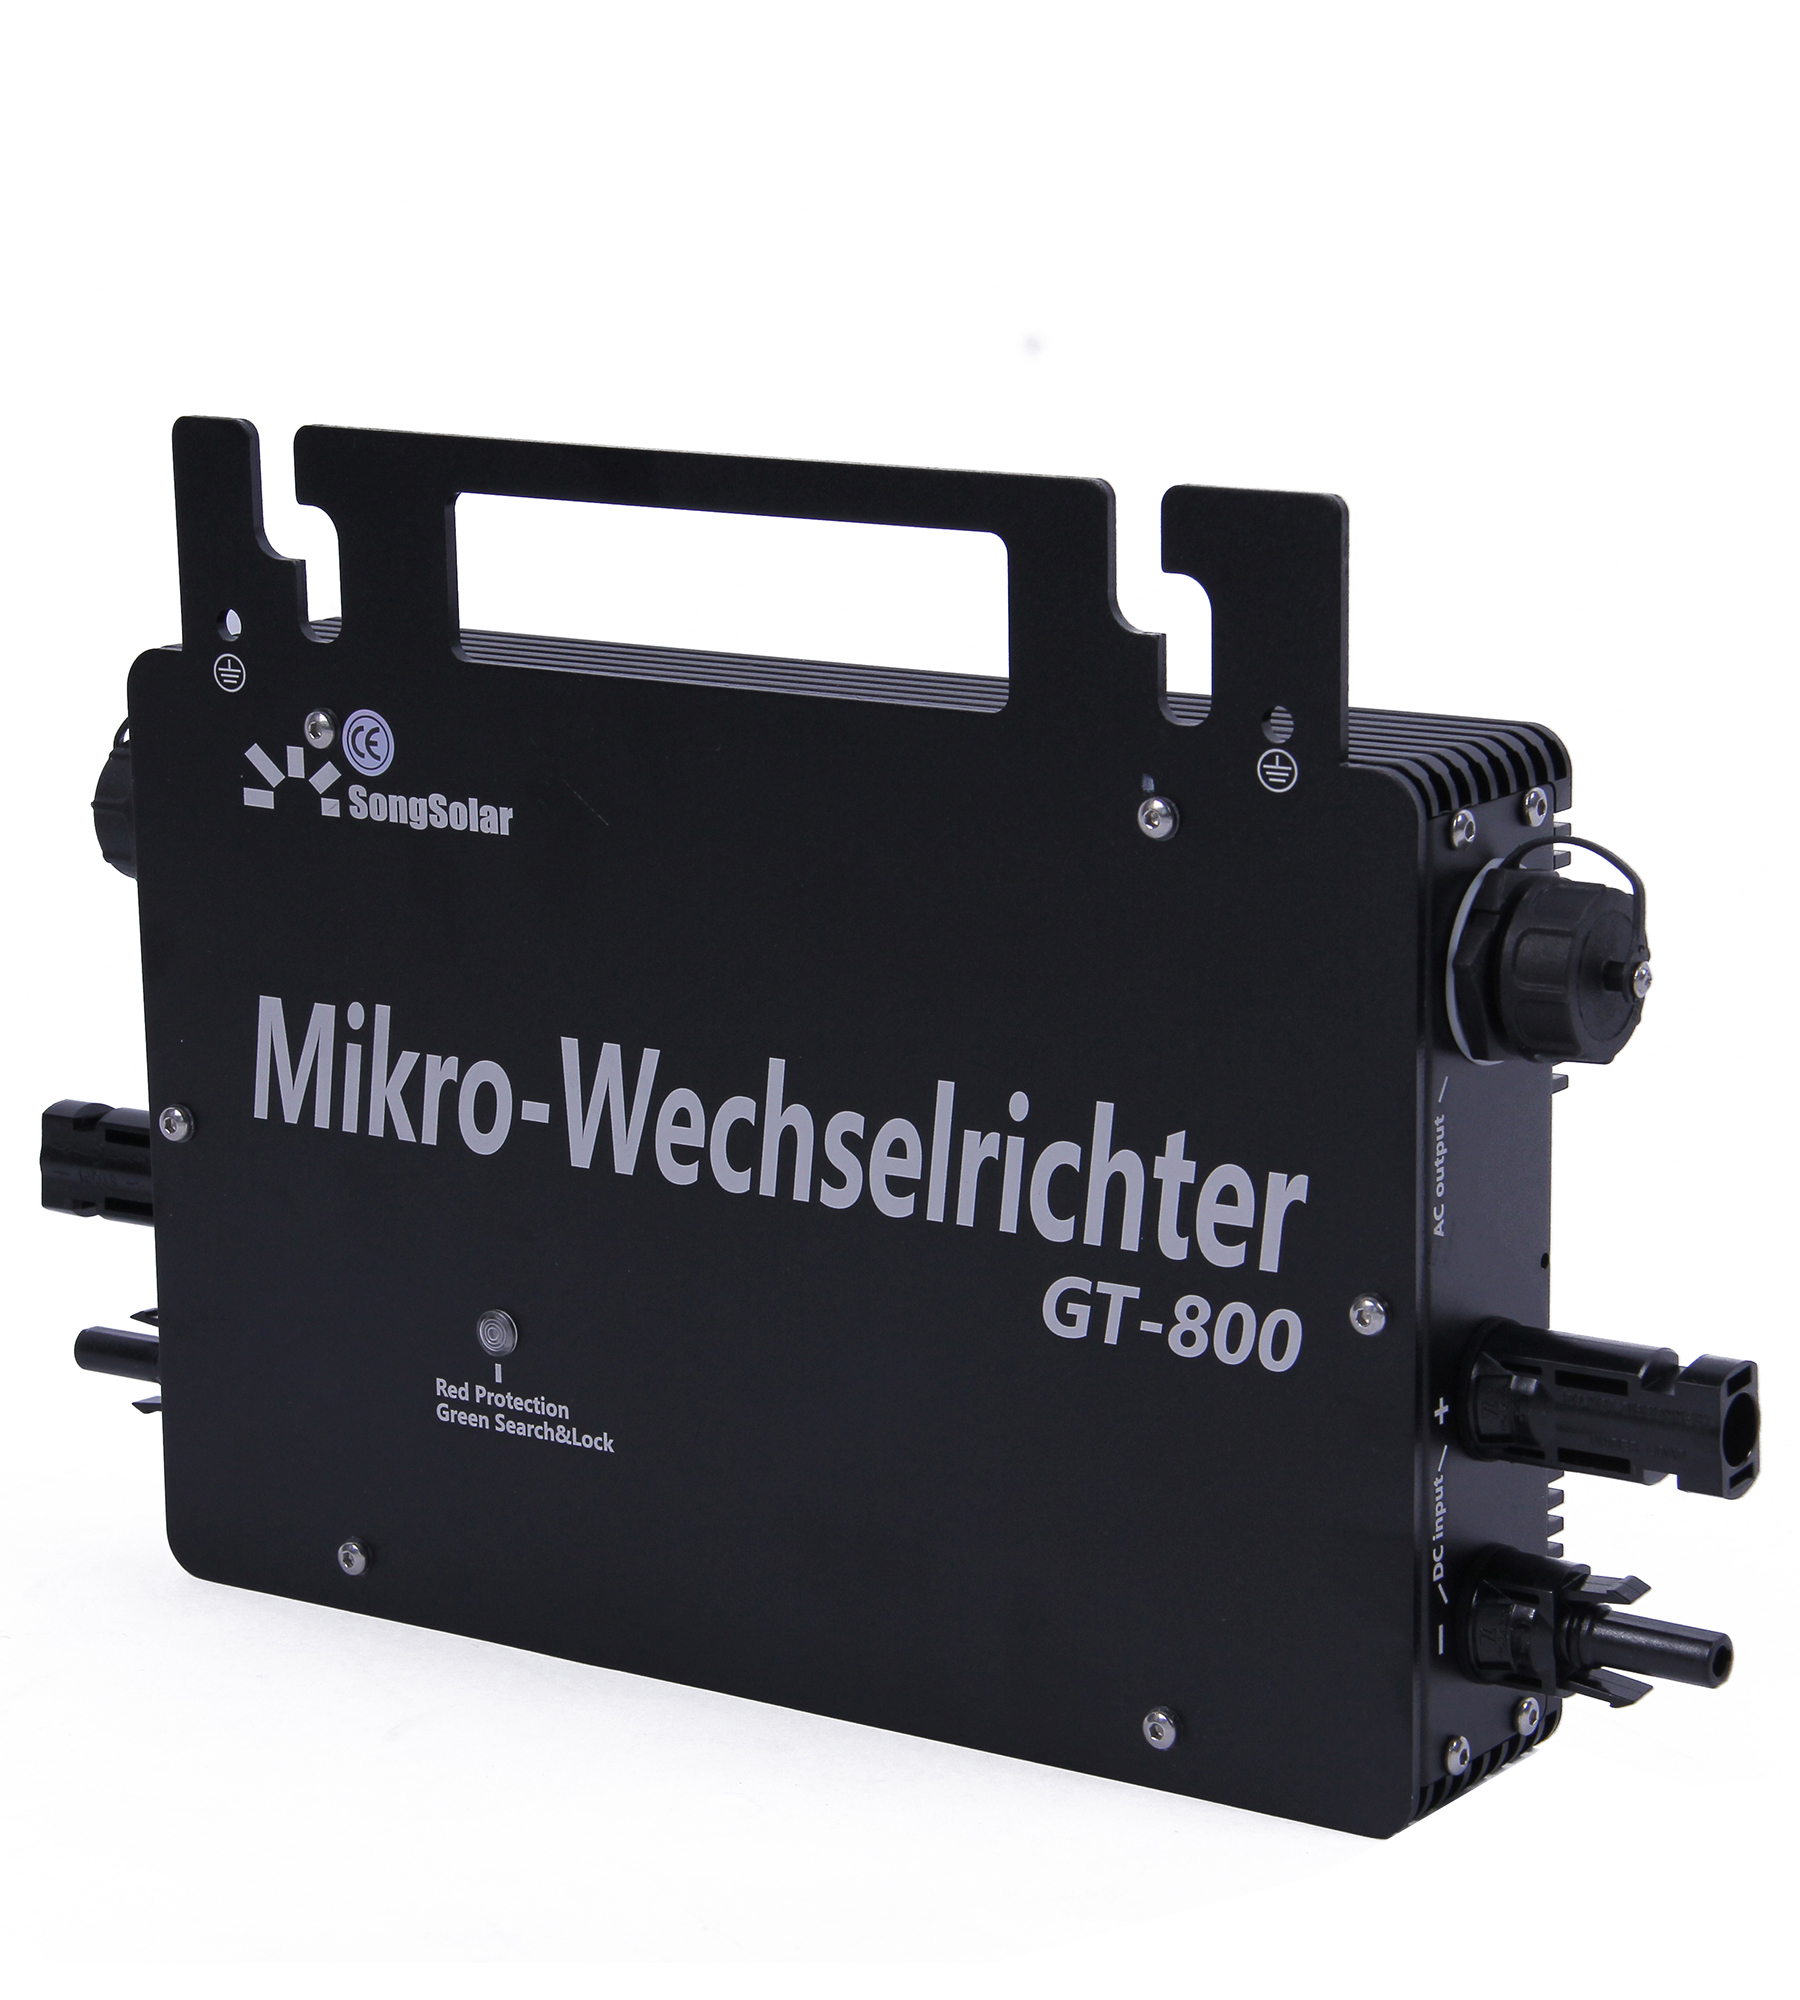 Presentazione del micro inverter: alta precisione, sicurezza d'uso, massima potenza in uscita, funzionamento wireless.